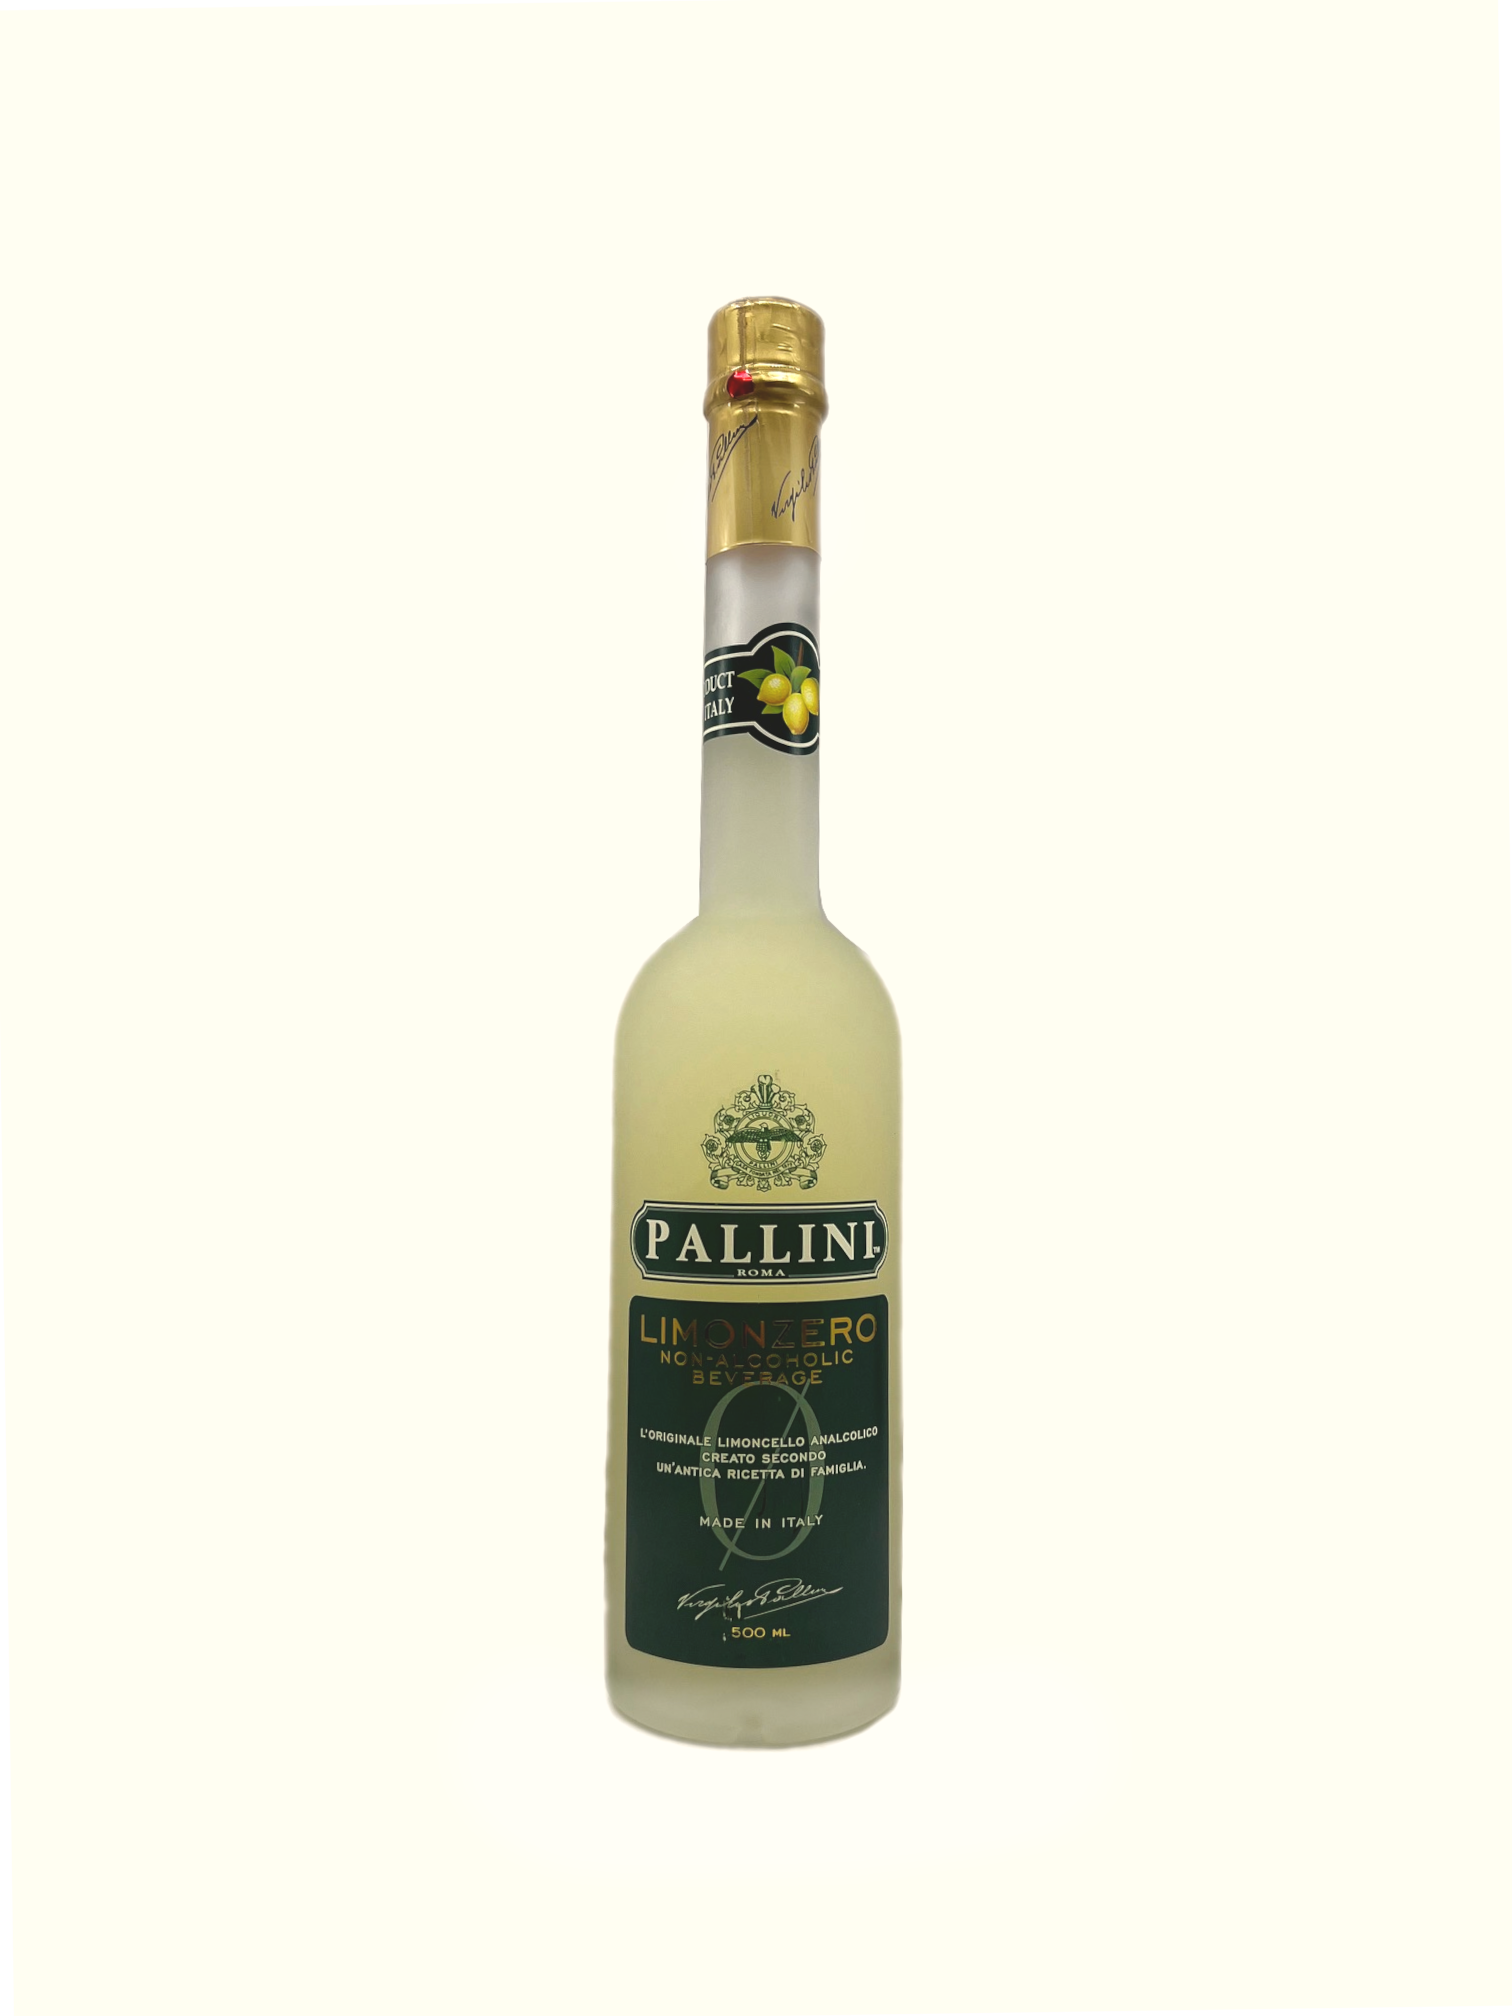  Pallini LIMONZERO - alkoholfreier Limoncello 0,5l 0,0%vol.